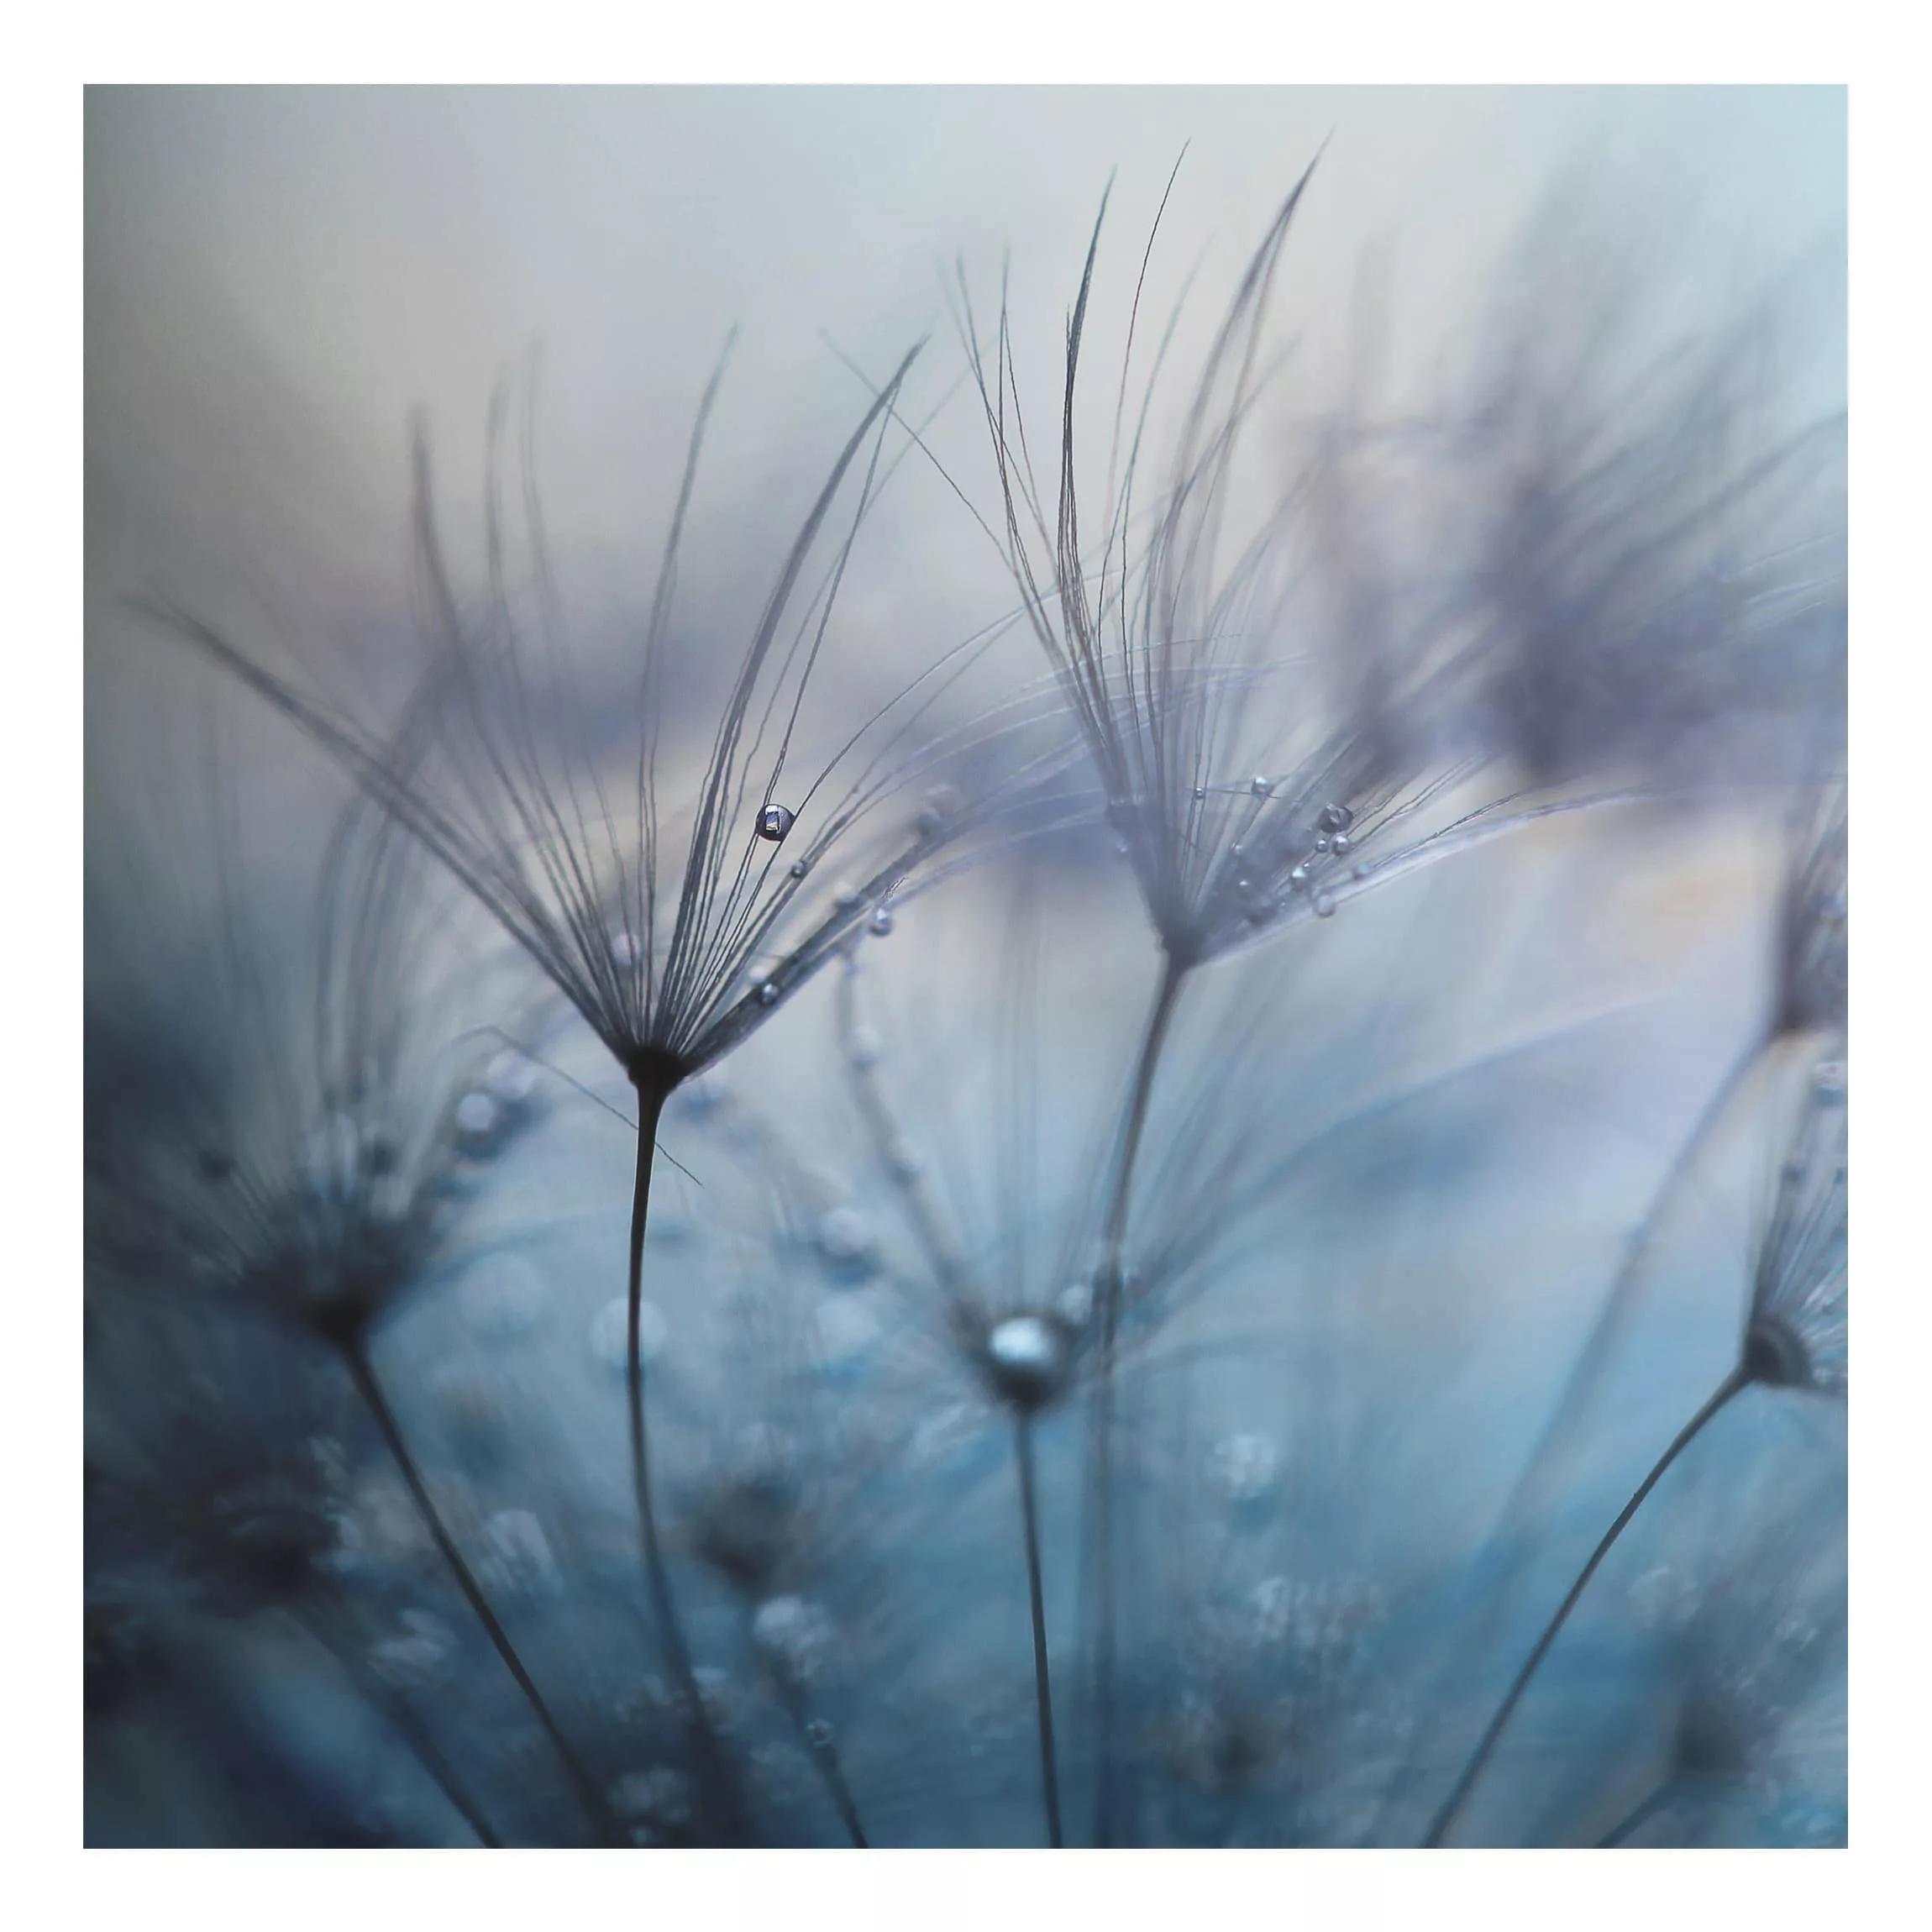 Alu-Dibond Bild Blumen - Quadrat Blaue Federn im Regen günstig online kaufen